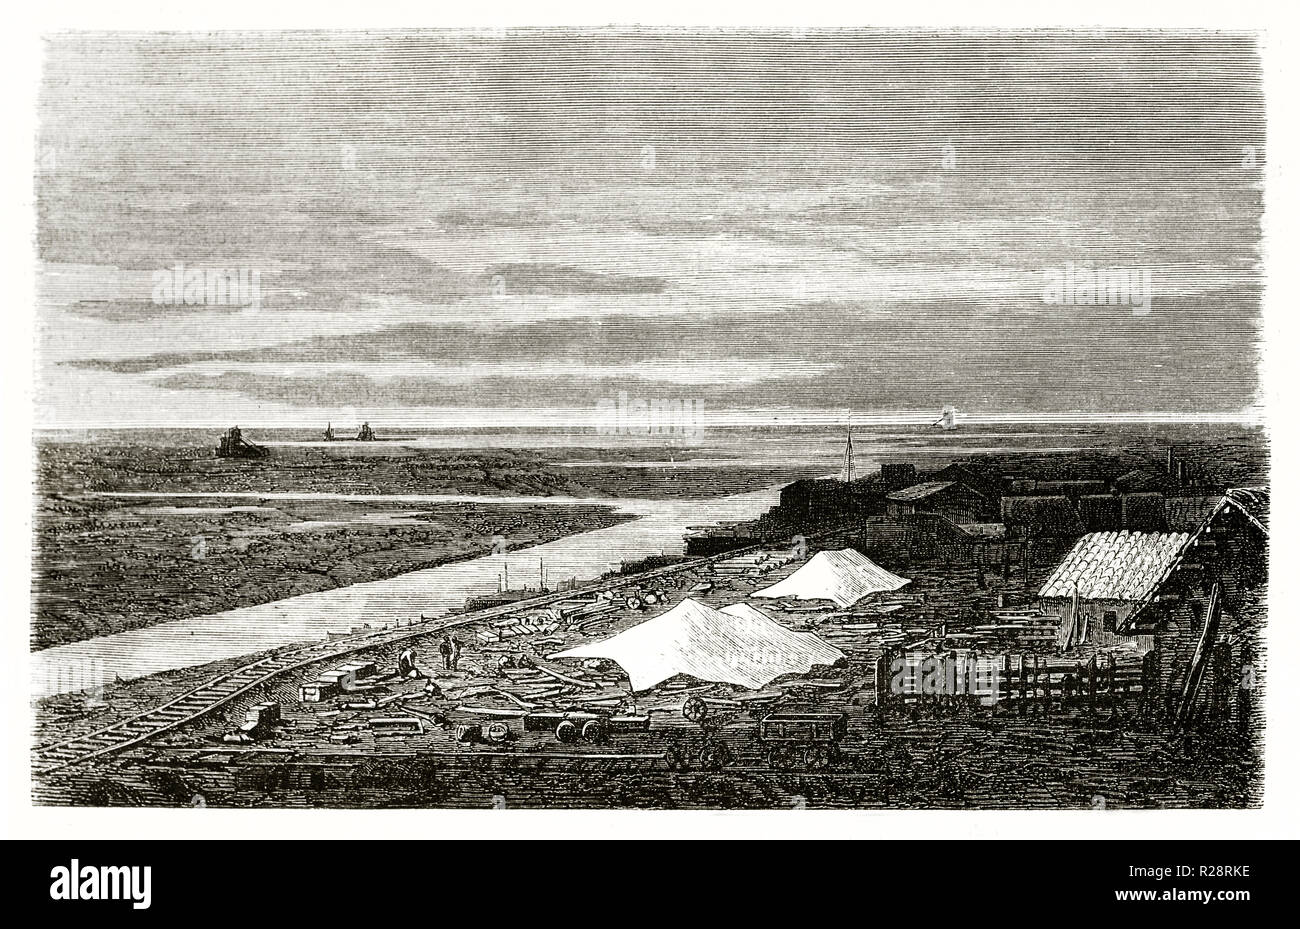 Alte Ansicht von port-said: Suez Canal Baustelle in der Nähe von Lake Manzala, Ägypten. Durch Grenet, Publ. Bei le Tour du Monde, Paris, 1863 Stockfoto